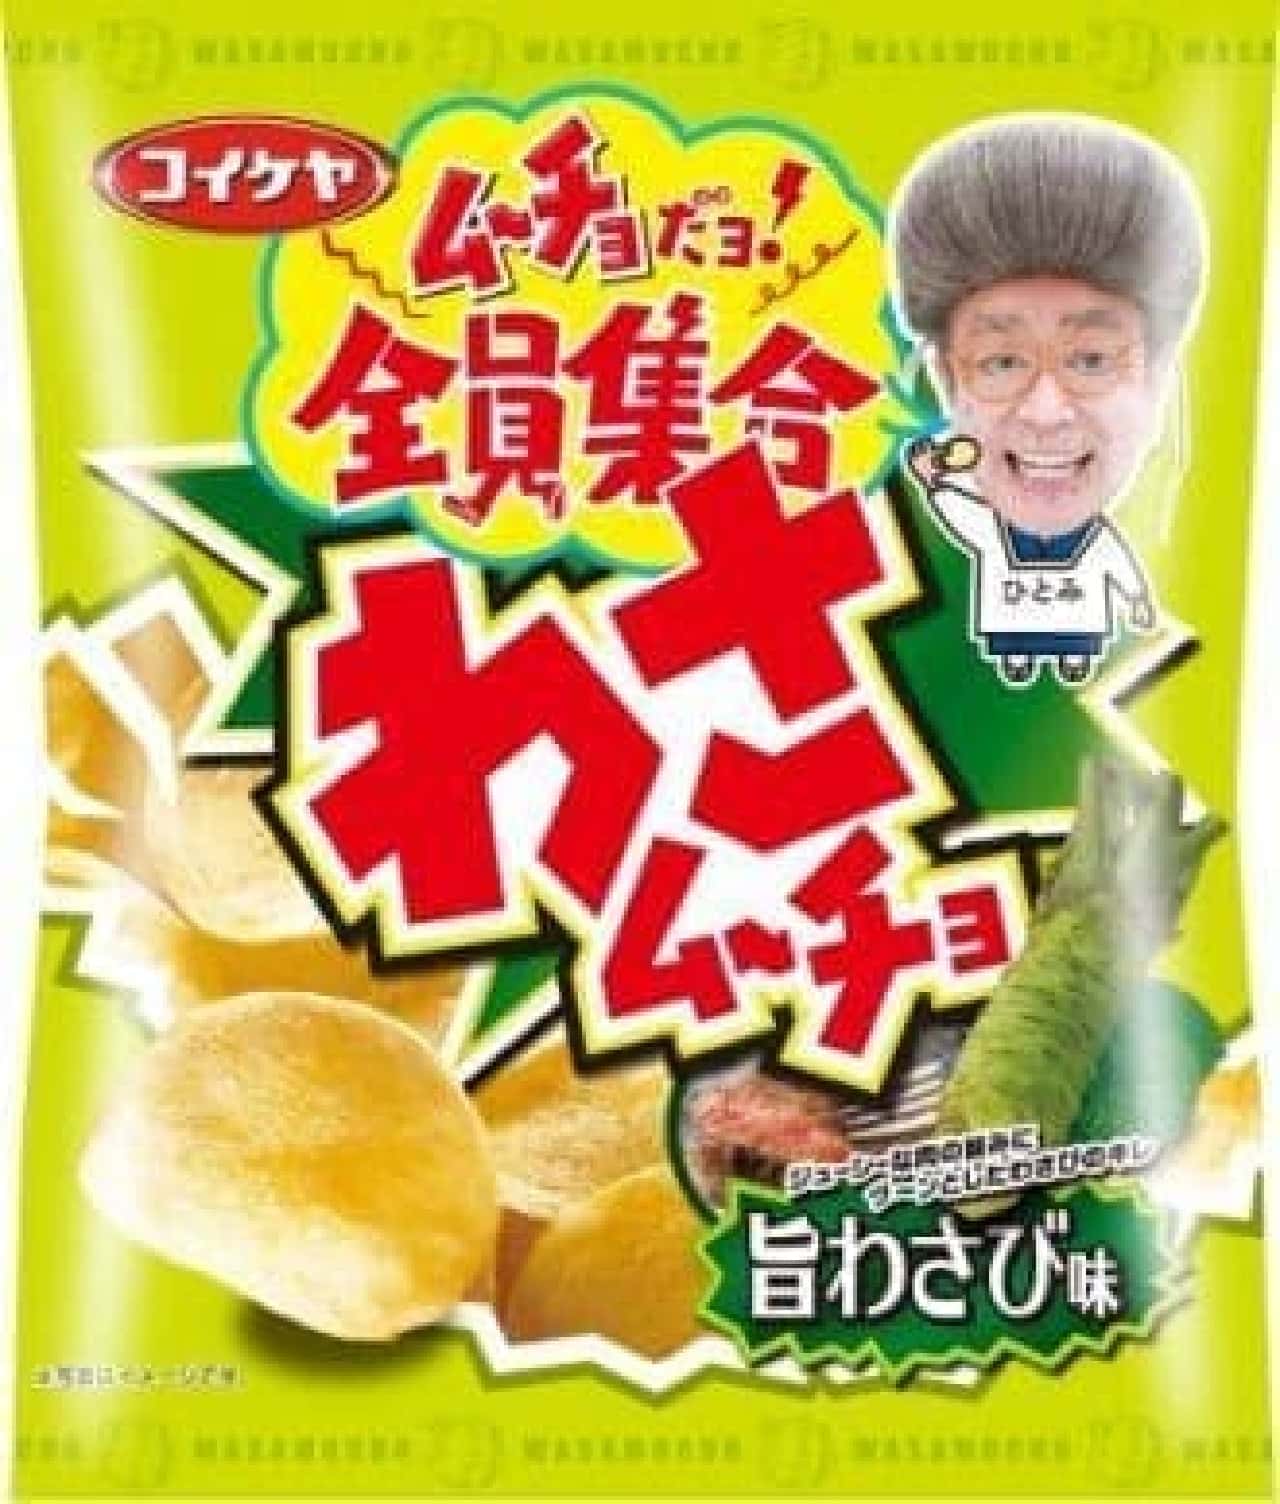 Koike-ya "Wasabi Chips Delicious Wasabi Flavor"